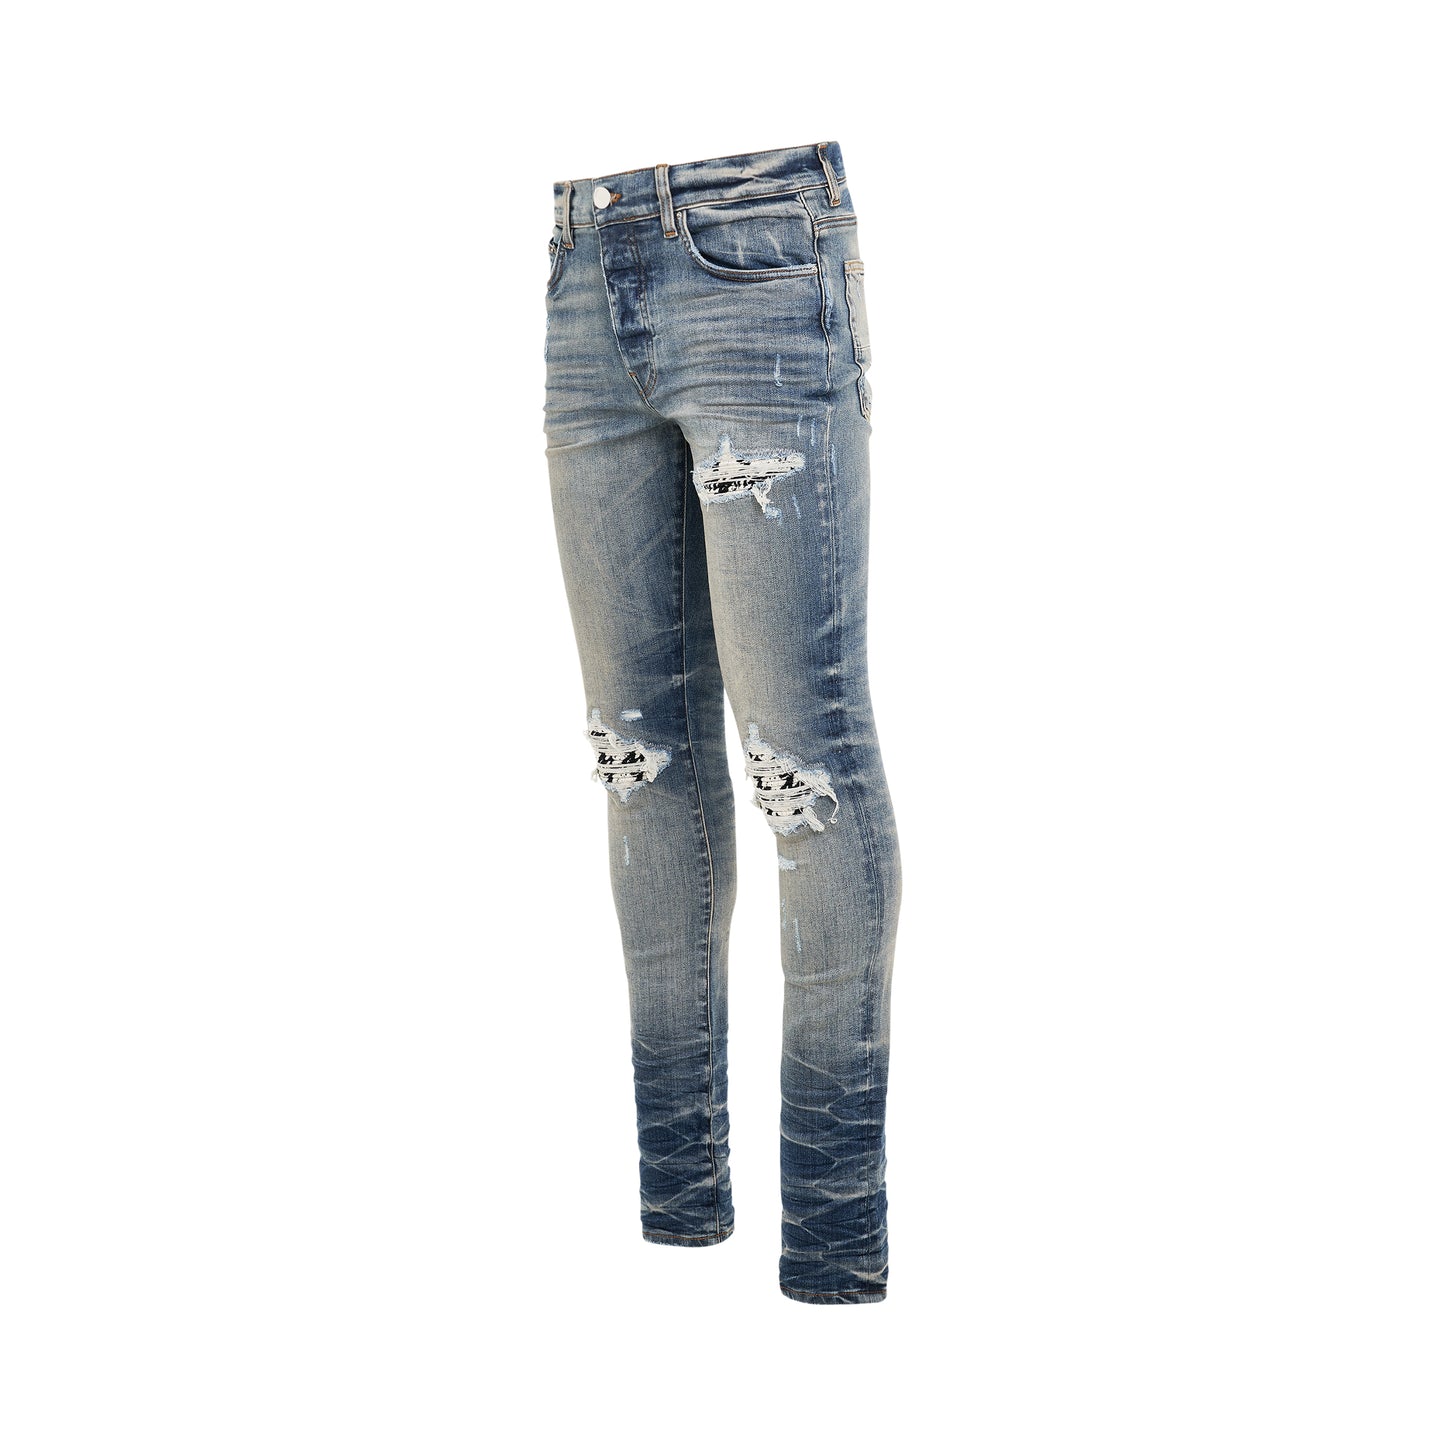 MX1 Tweed Jeans in Vintage Indigo